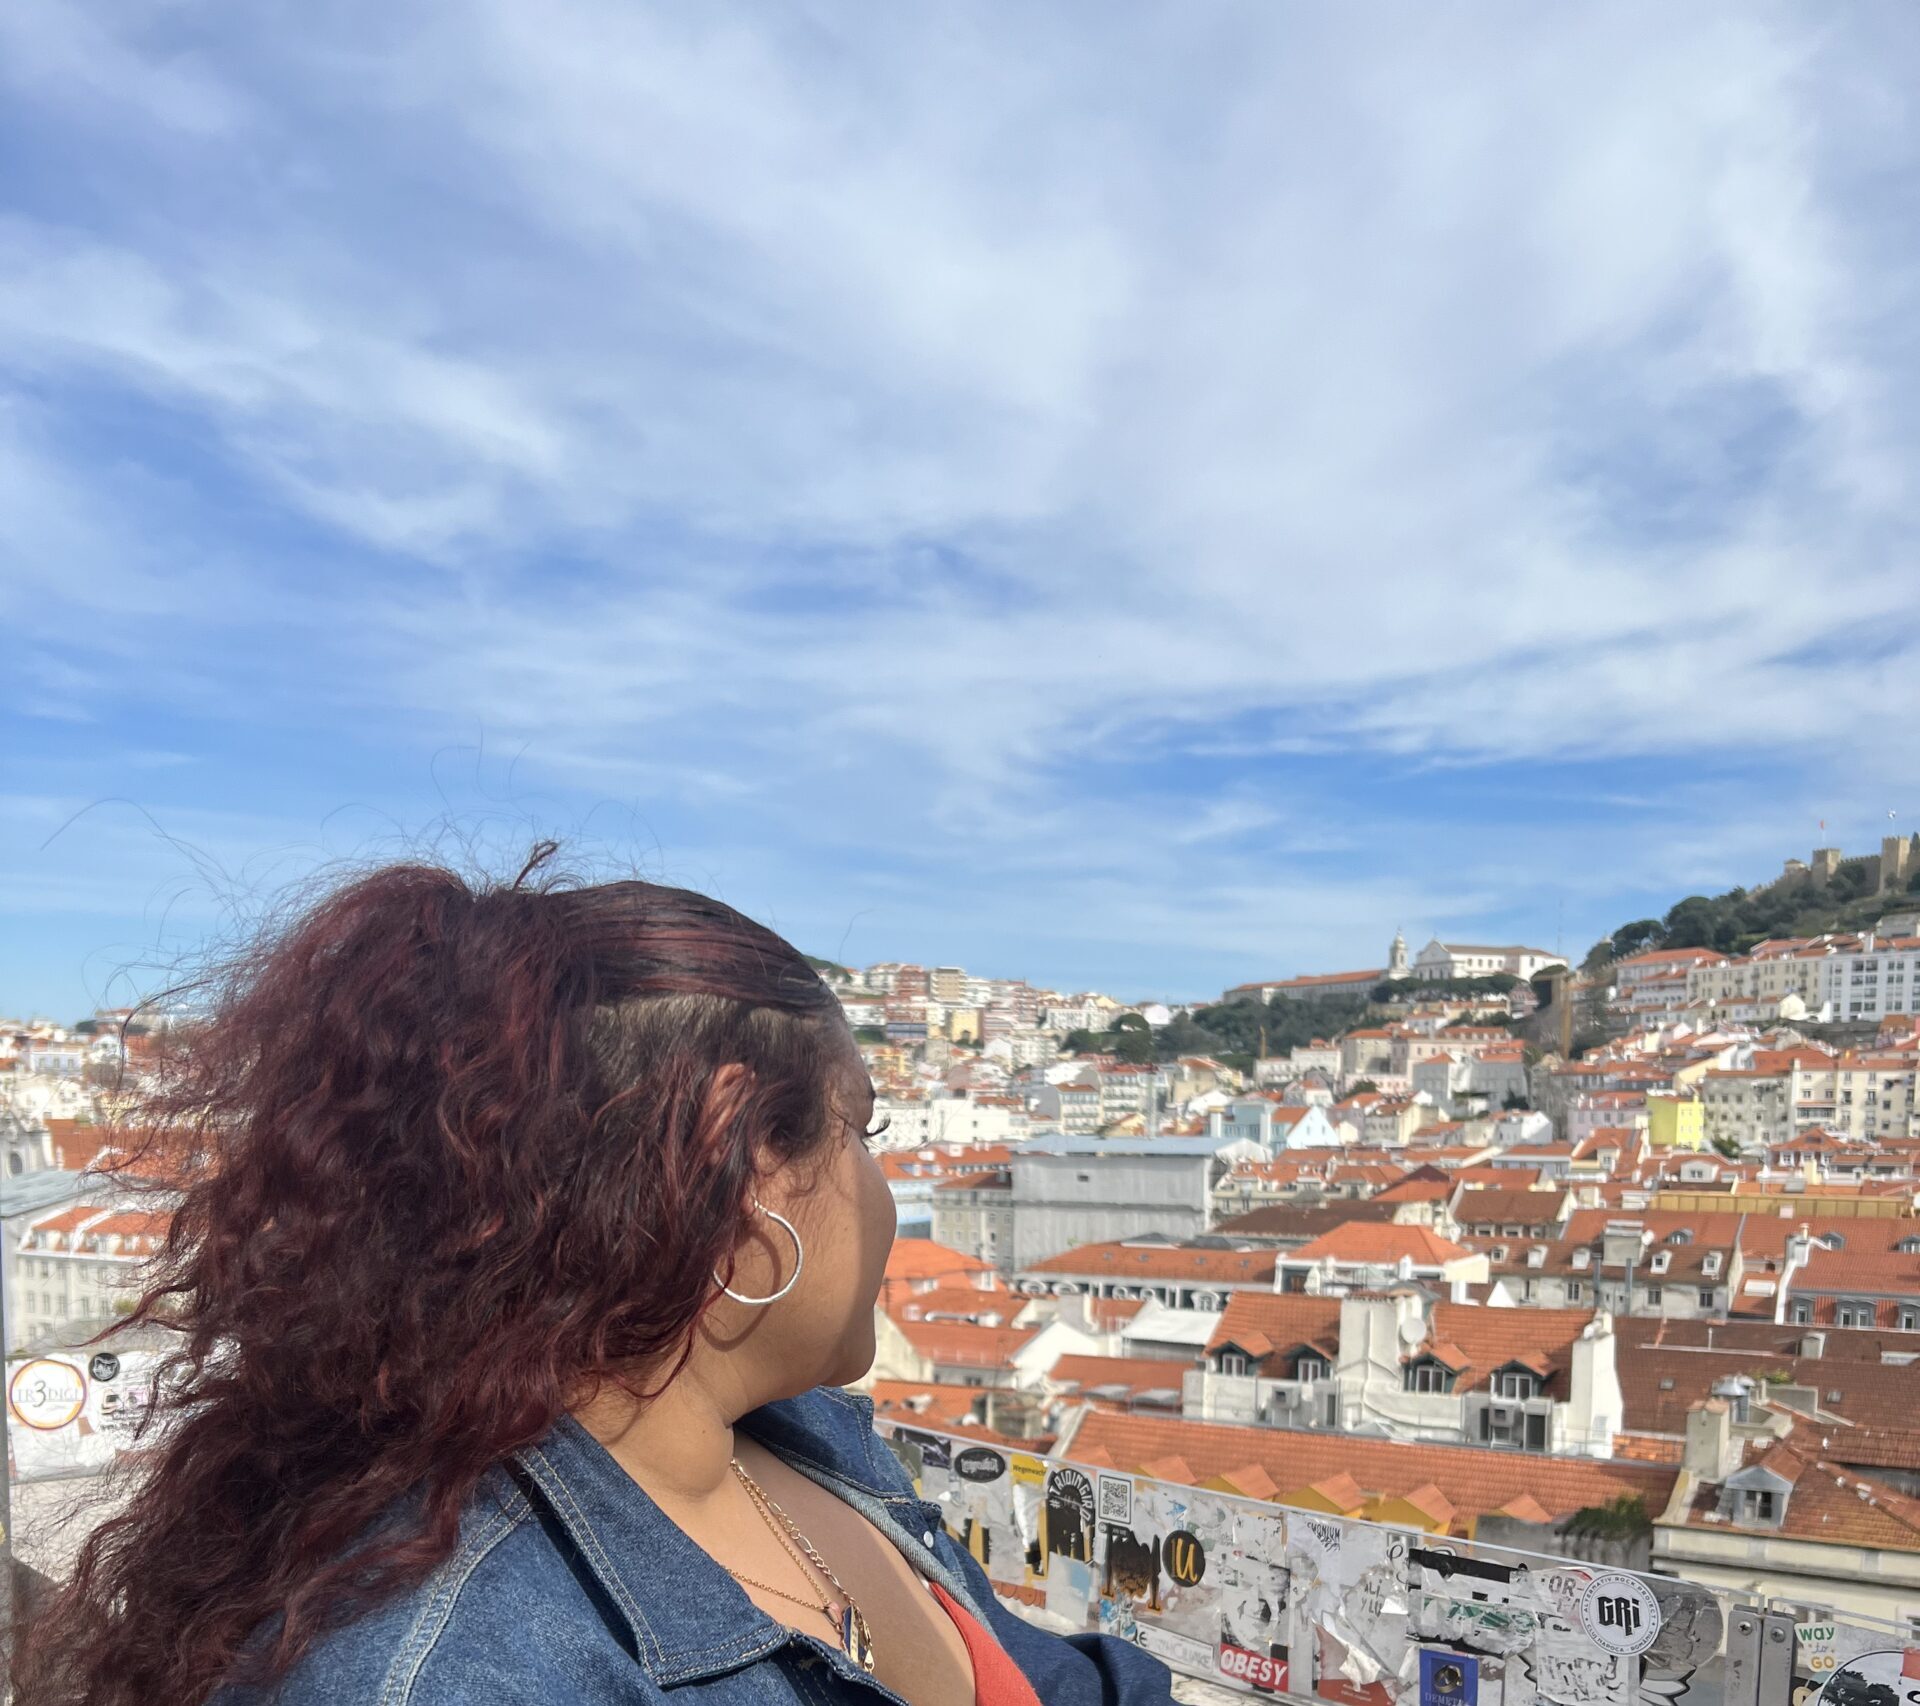 Me overlooking Lisbon